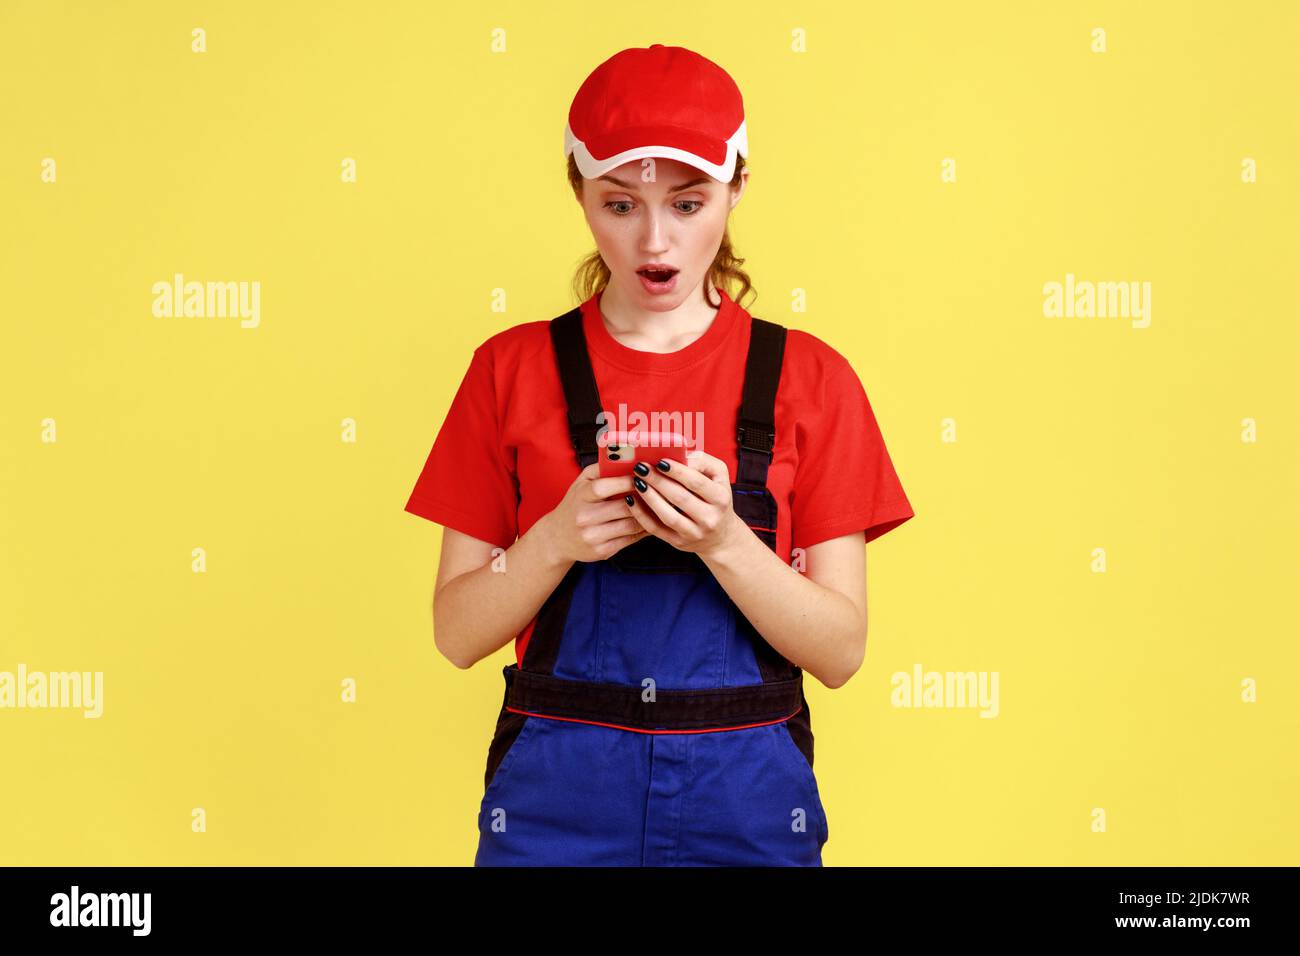 Porträt einer jungen erwachsenen schockierten Arbeiterin, die das Mobiltelefon zur Online-Unterstützung benutzte, positive Emotionen ausdrückte, Overalls und rote Mütze trug. Innenaufnahme des Studios isoliert auf gelbem Hintergrund. Stockfoto